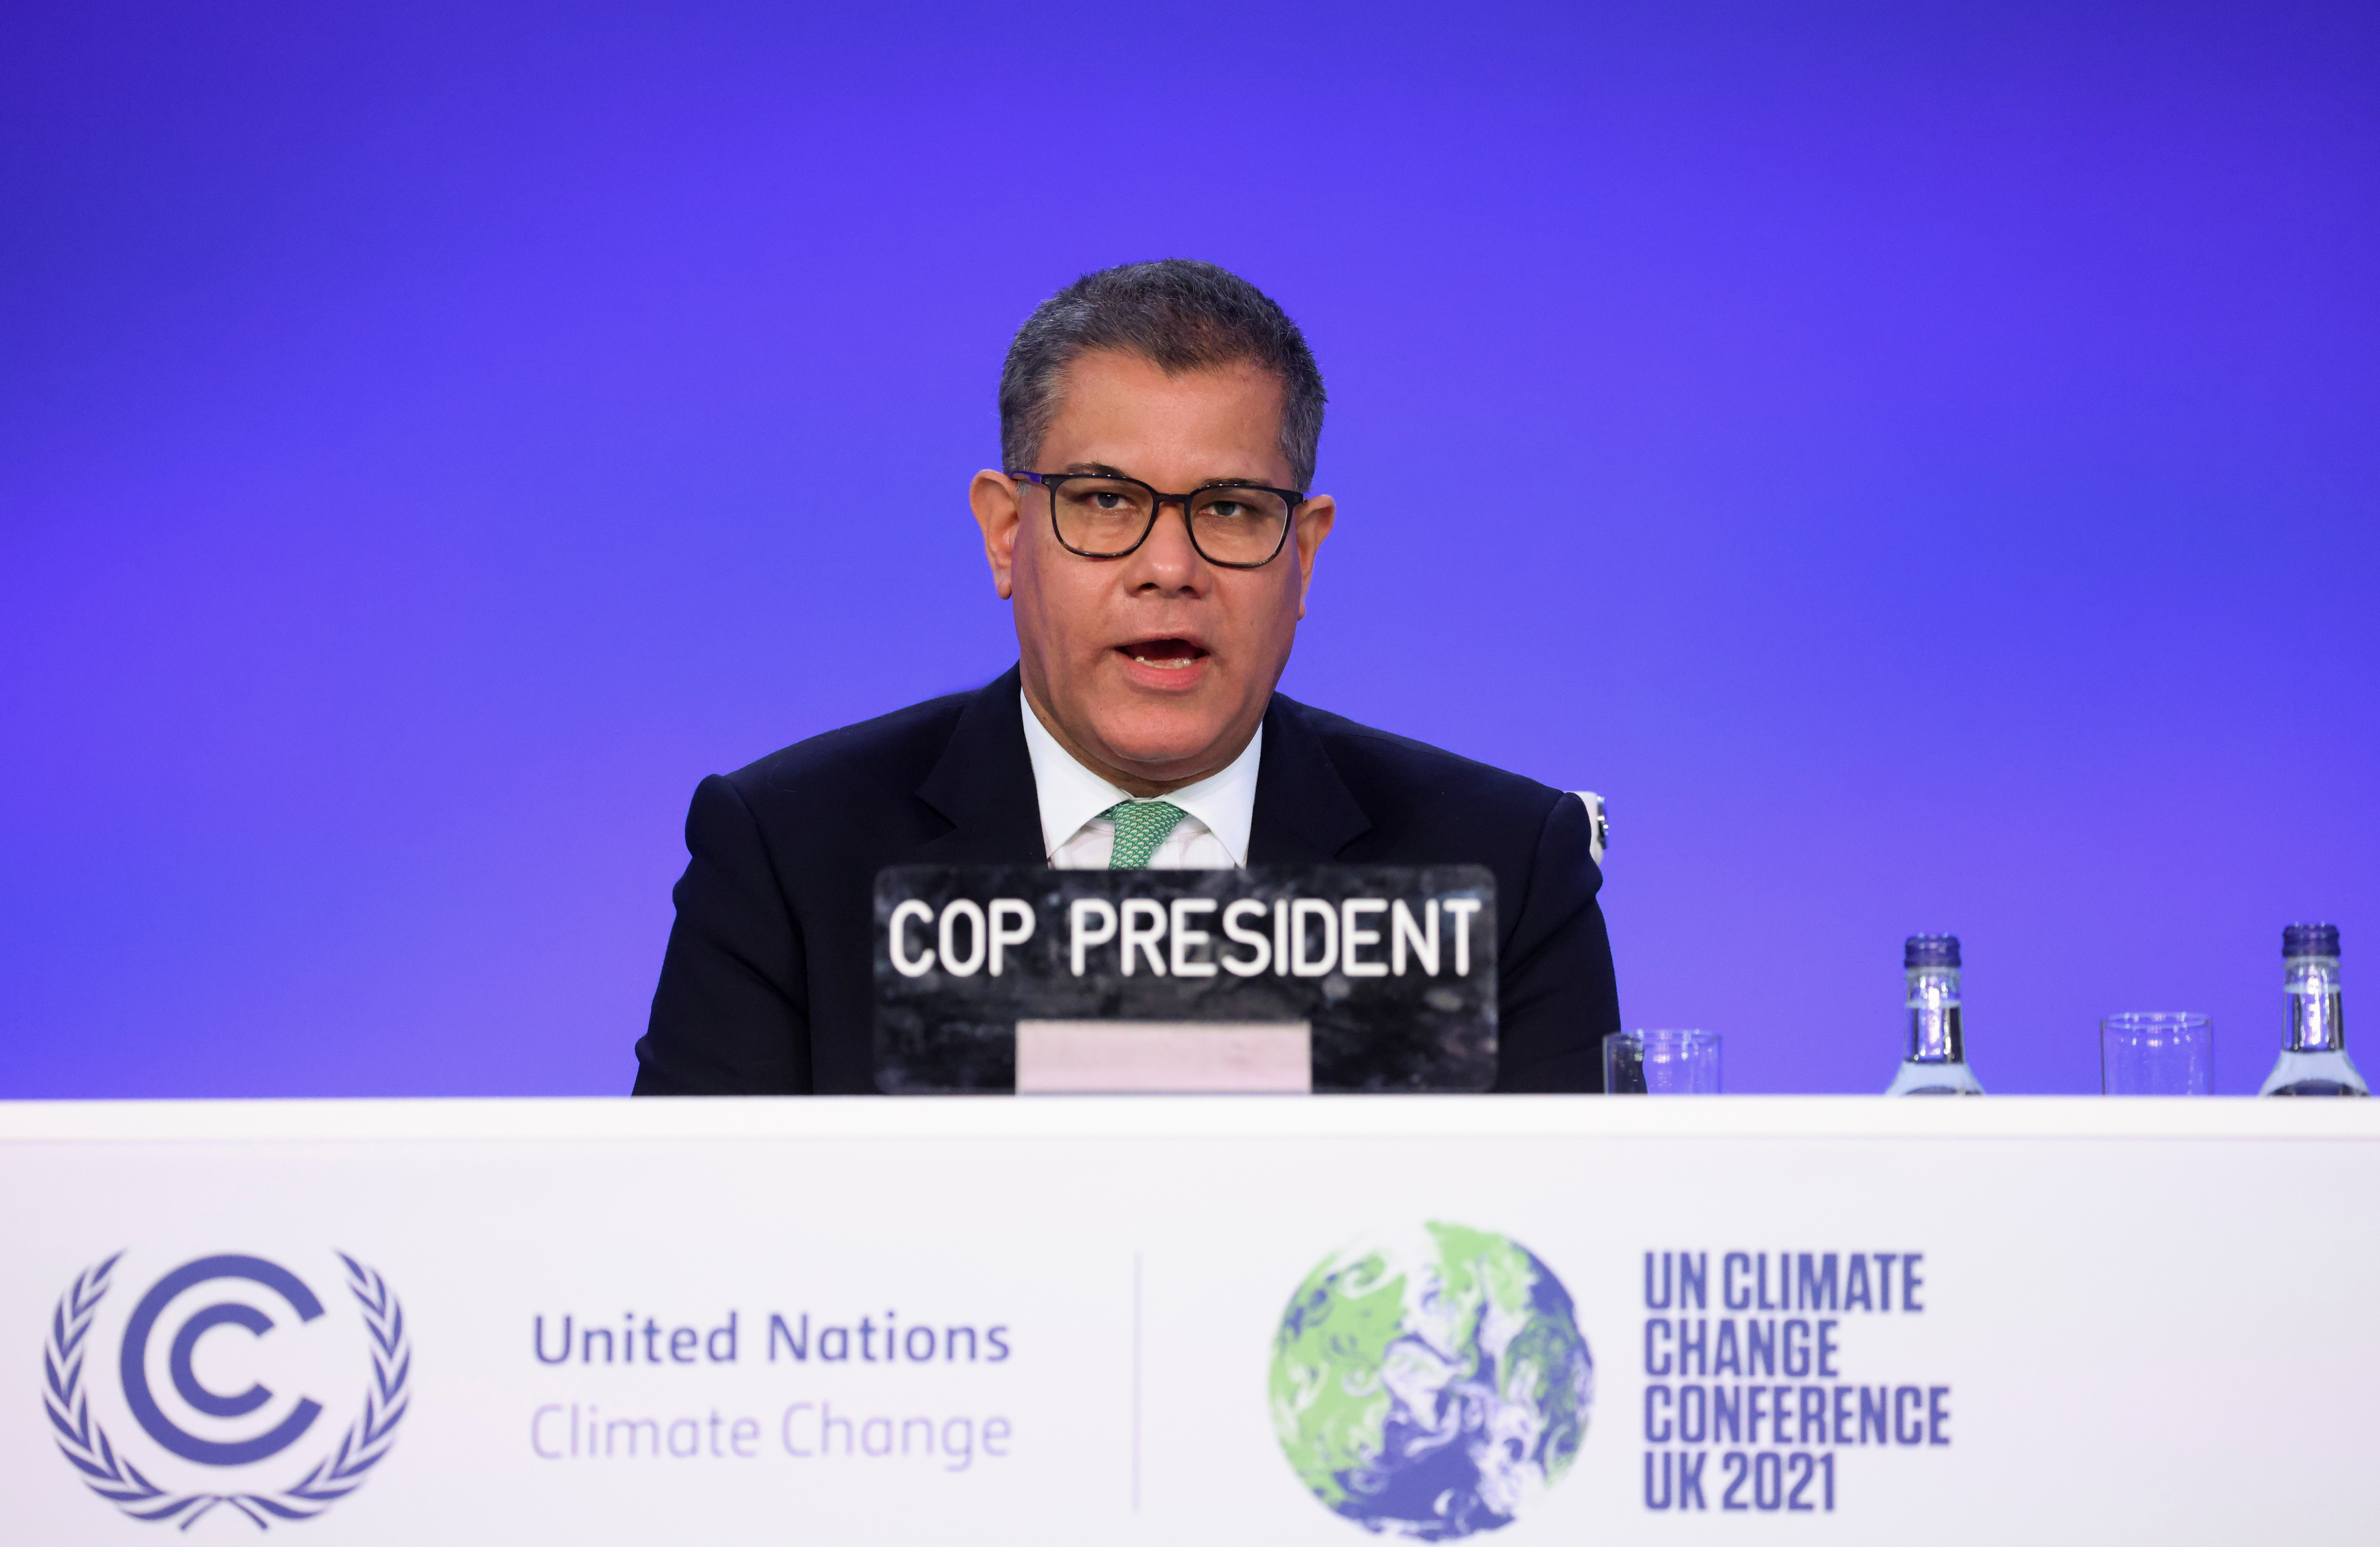 El presidente de la COP26, Alok Sharma, habla en la Conferencia de las Naciones Unidas sobre el Cambio Climático (COP26) en Glasgow, Escocia, Gran Bretaña, el 13 de noviembre de 2021. REUTERS/Yves Herman